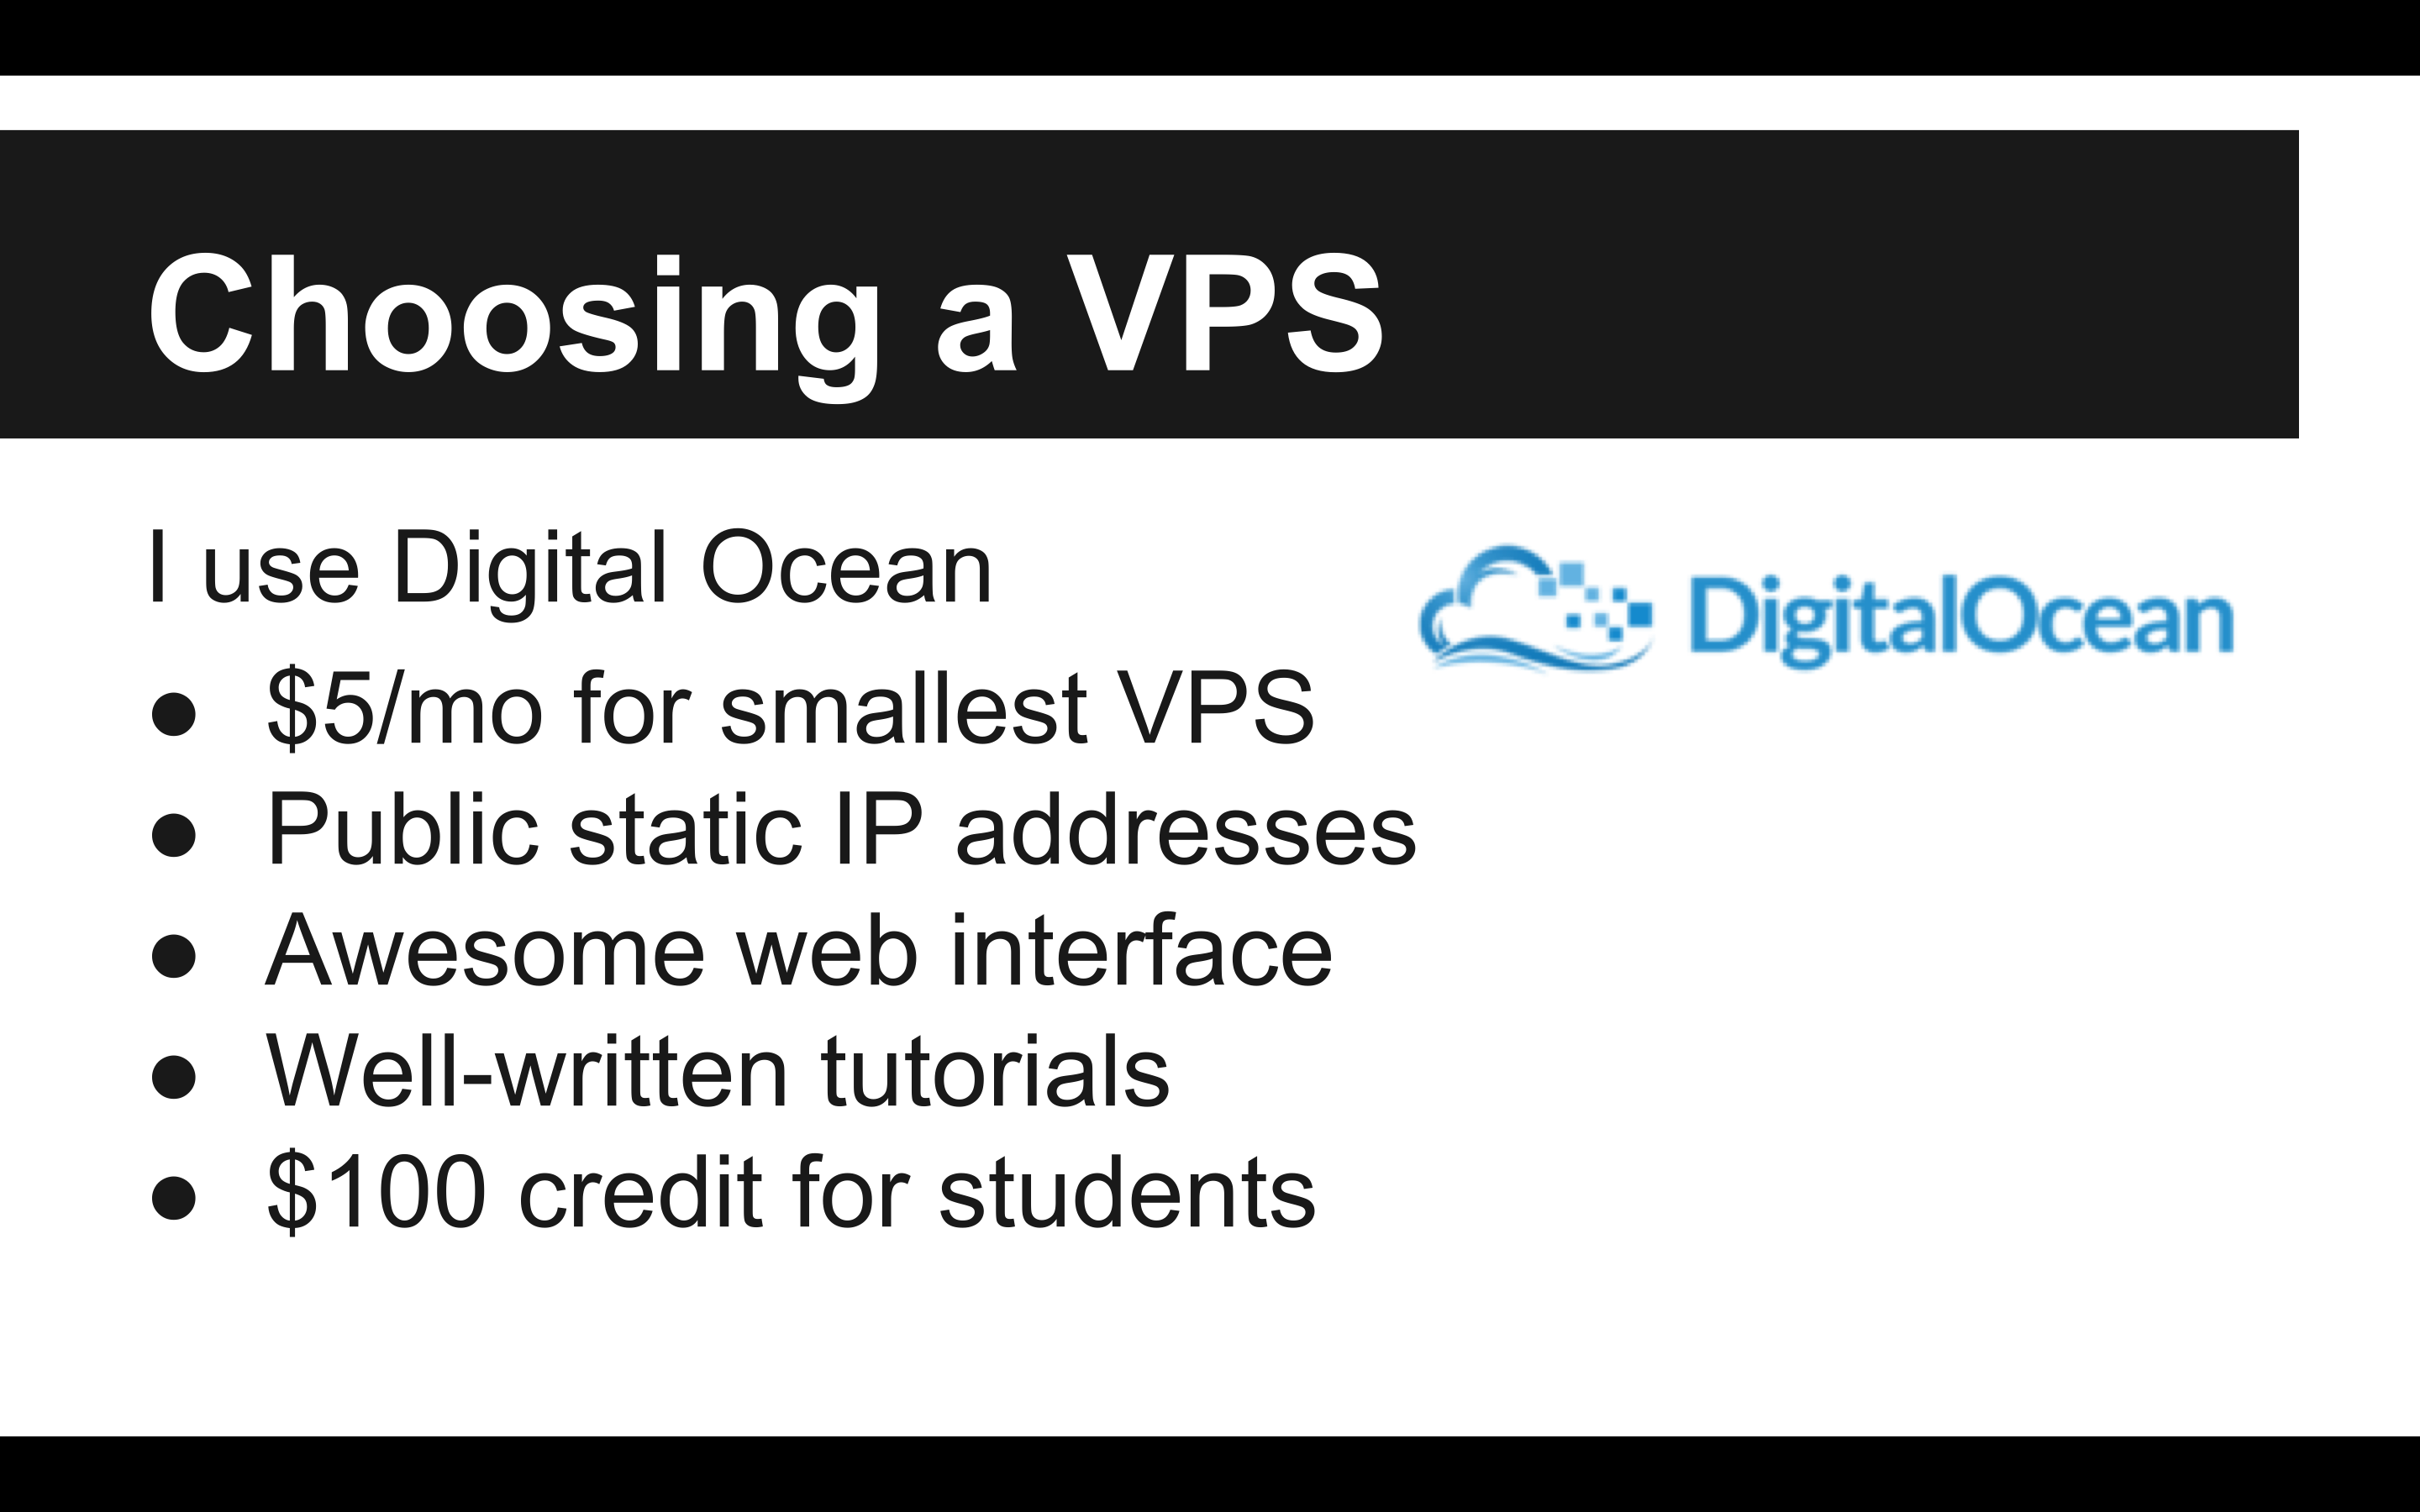 I use Digital Ocean as my VPS